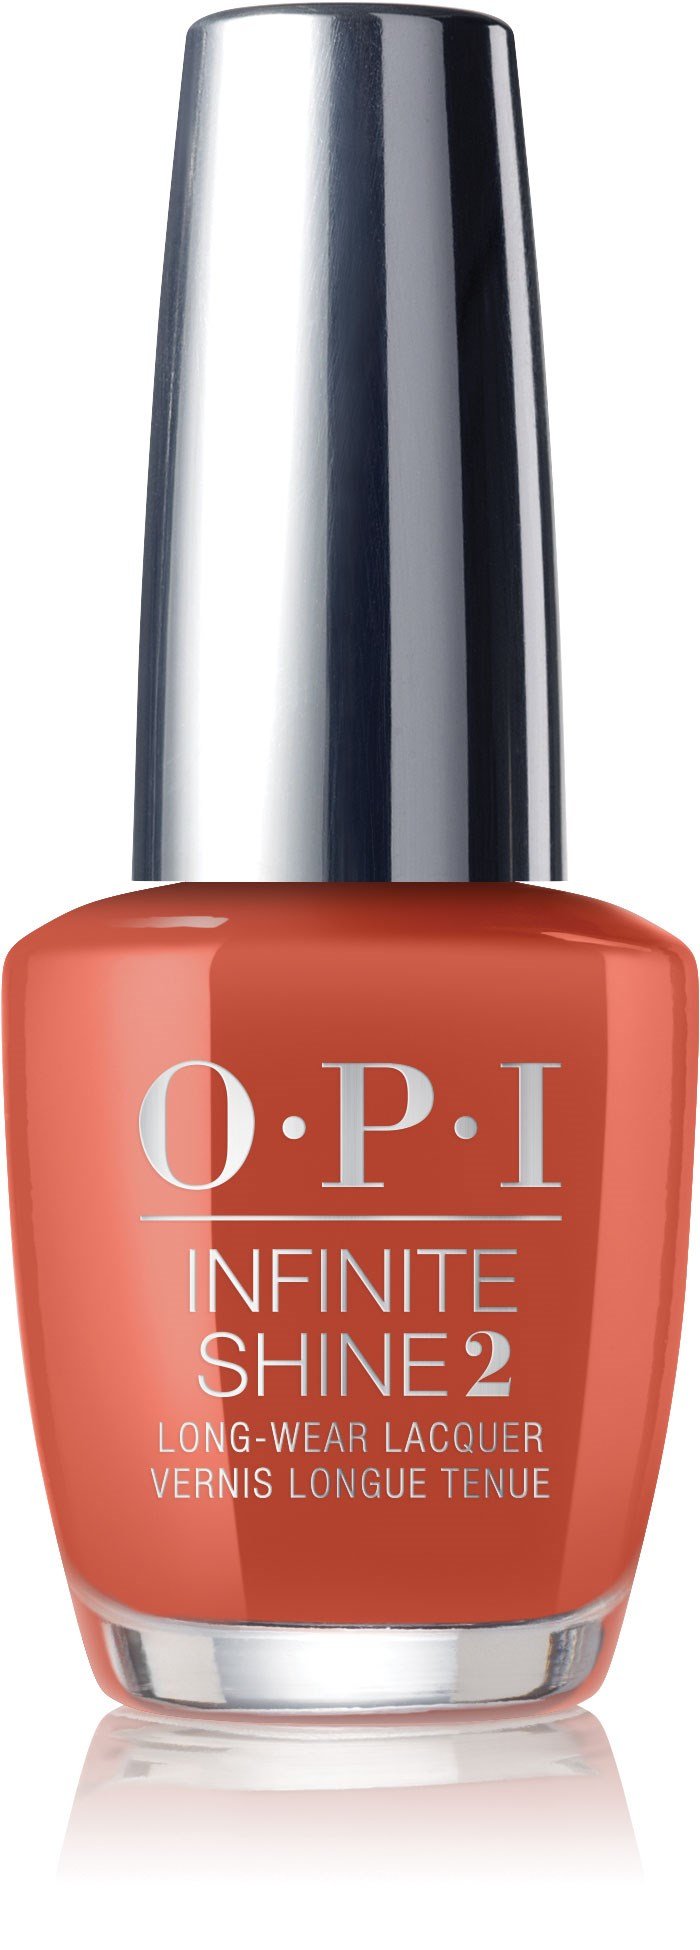 OPI Infinite Shine - Tira mi garabato